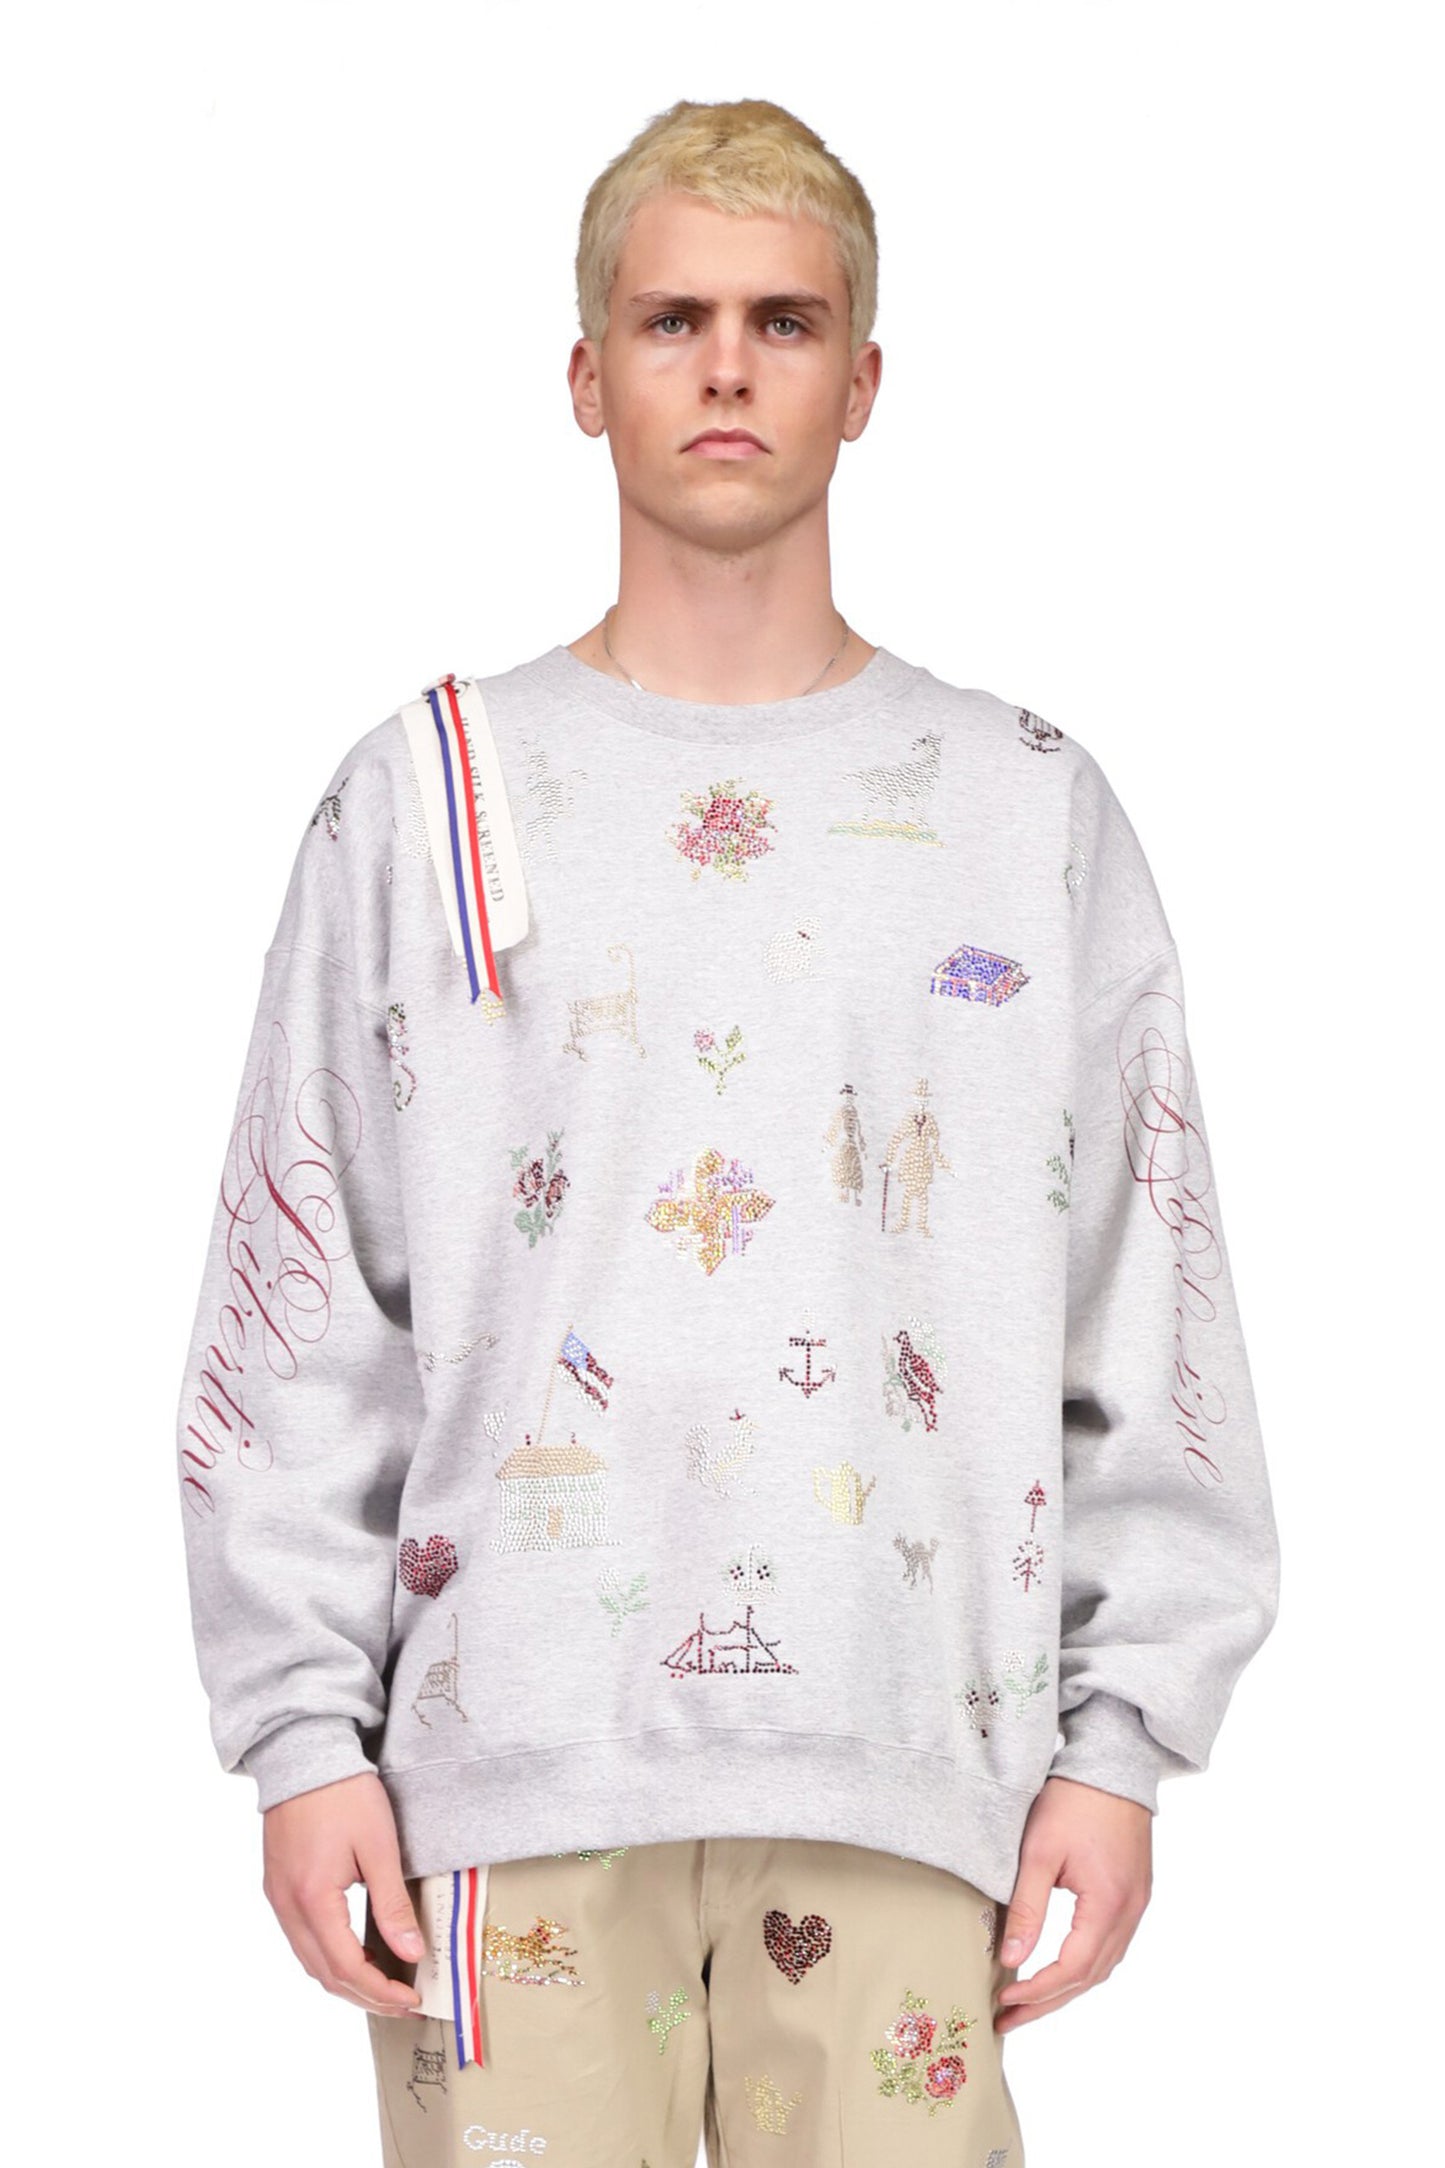 '19th Century Sampler' Pullover Sweatshirt - SWEATSHIRTS - Libertine